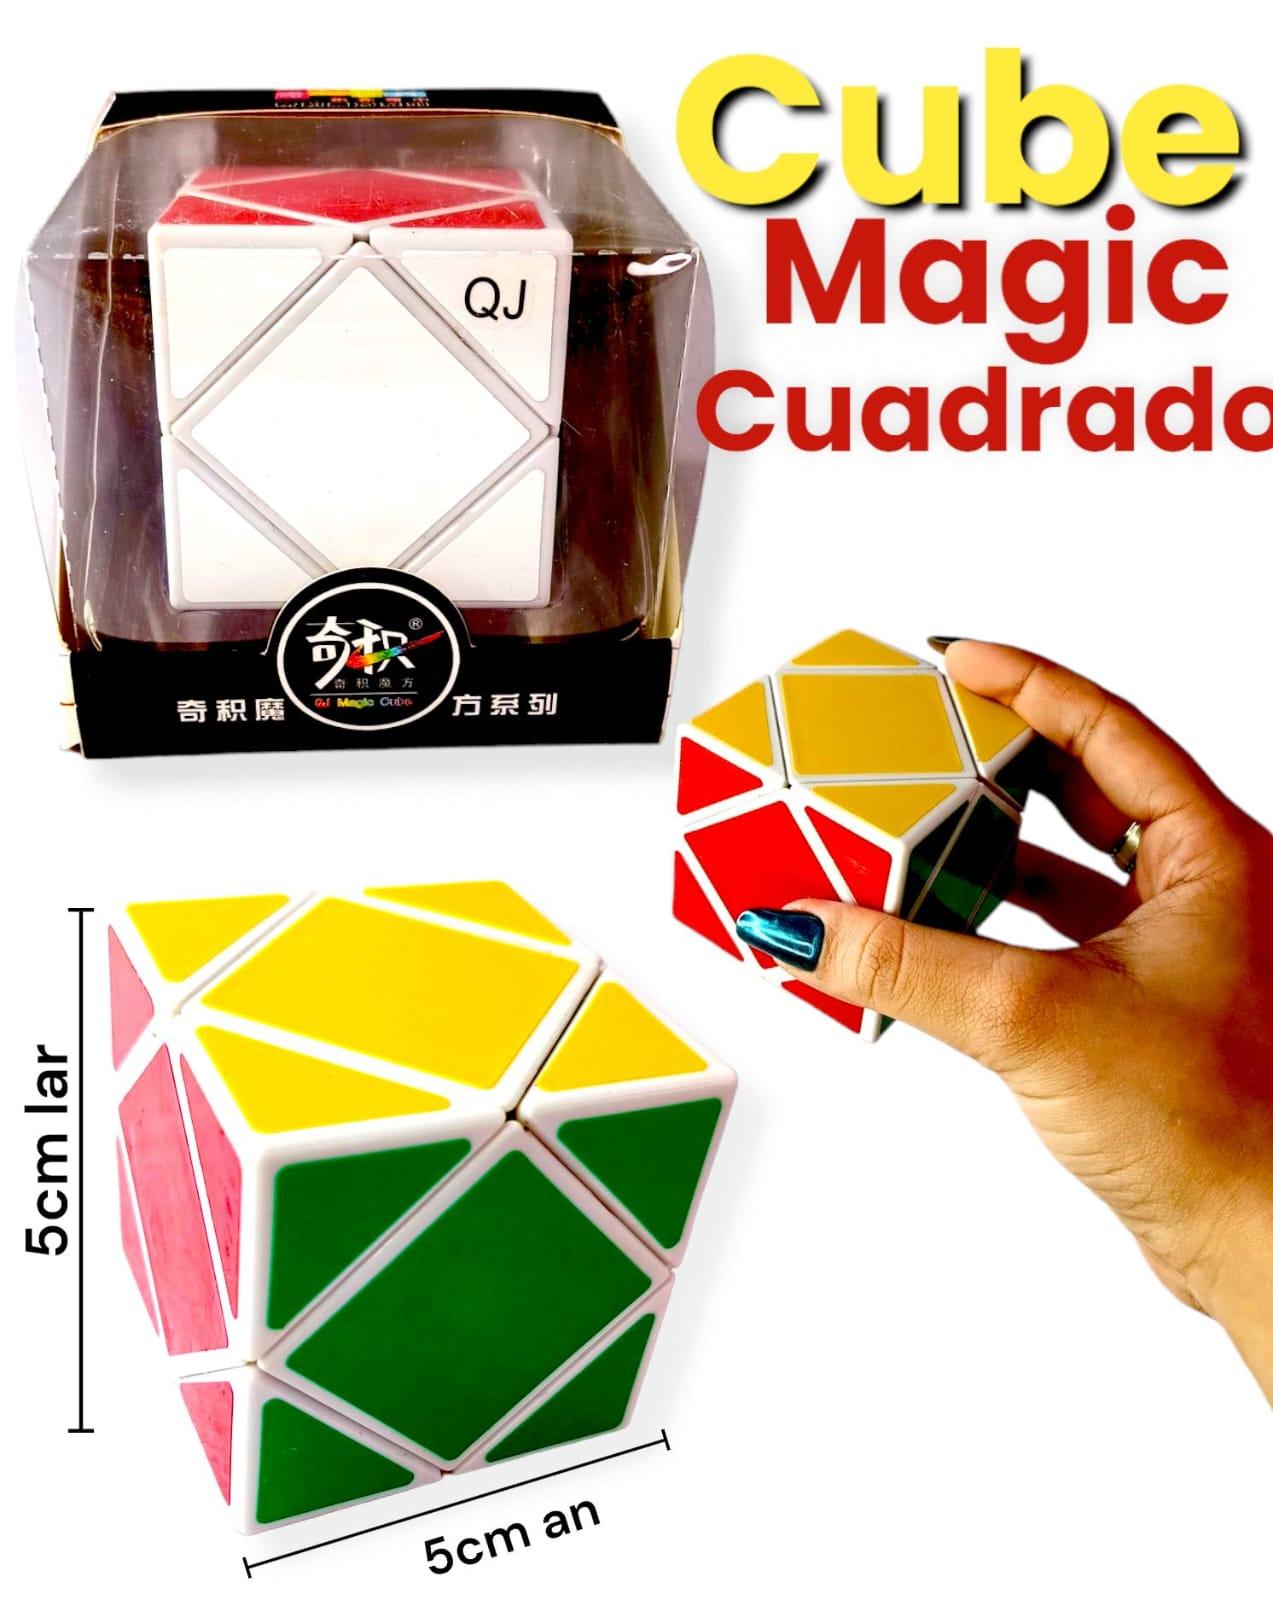 Cubo Magico CUADRADO 5cm